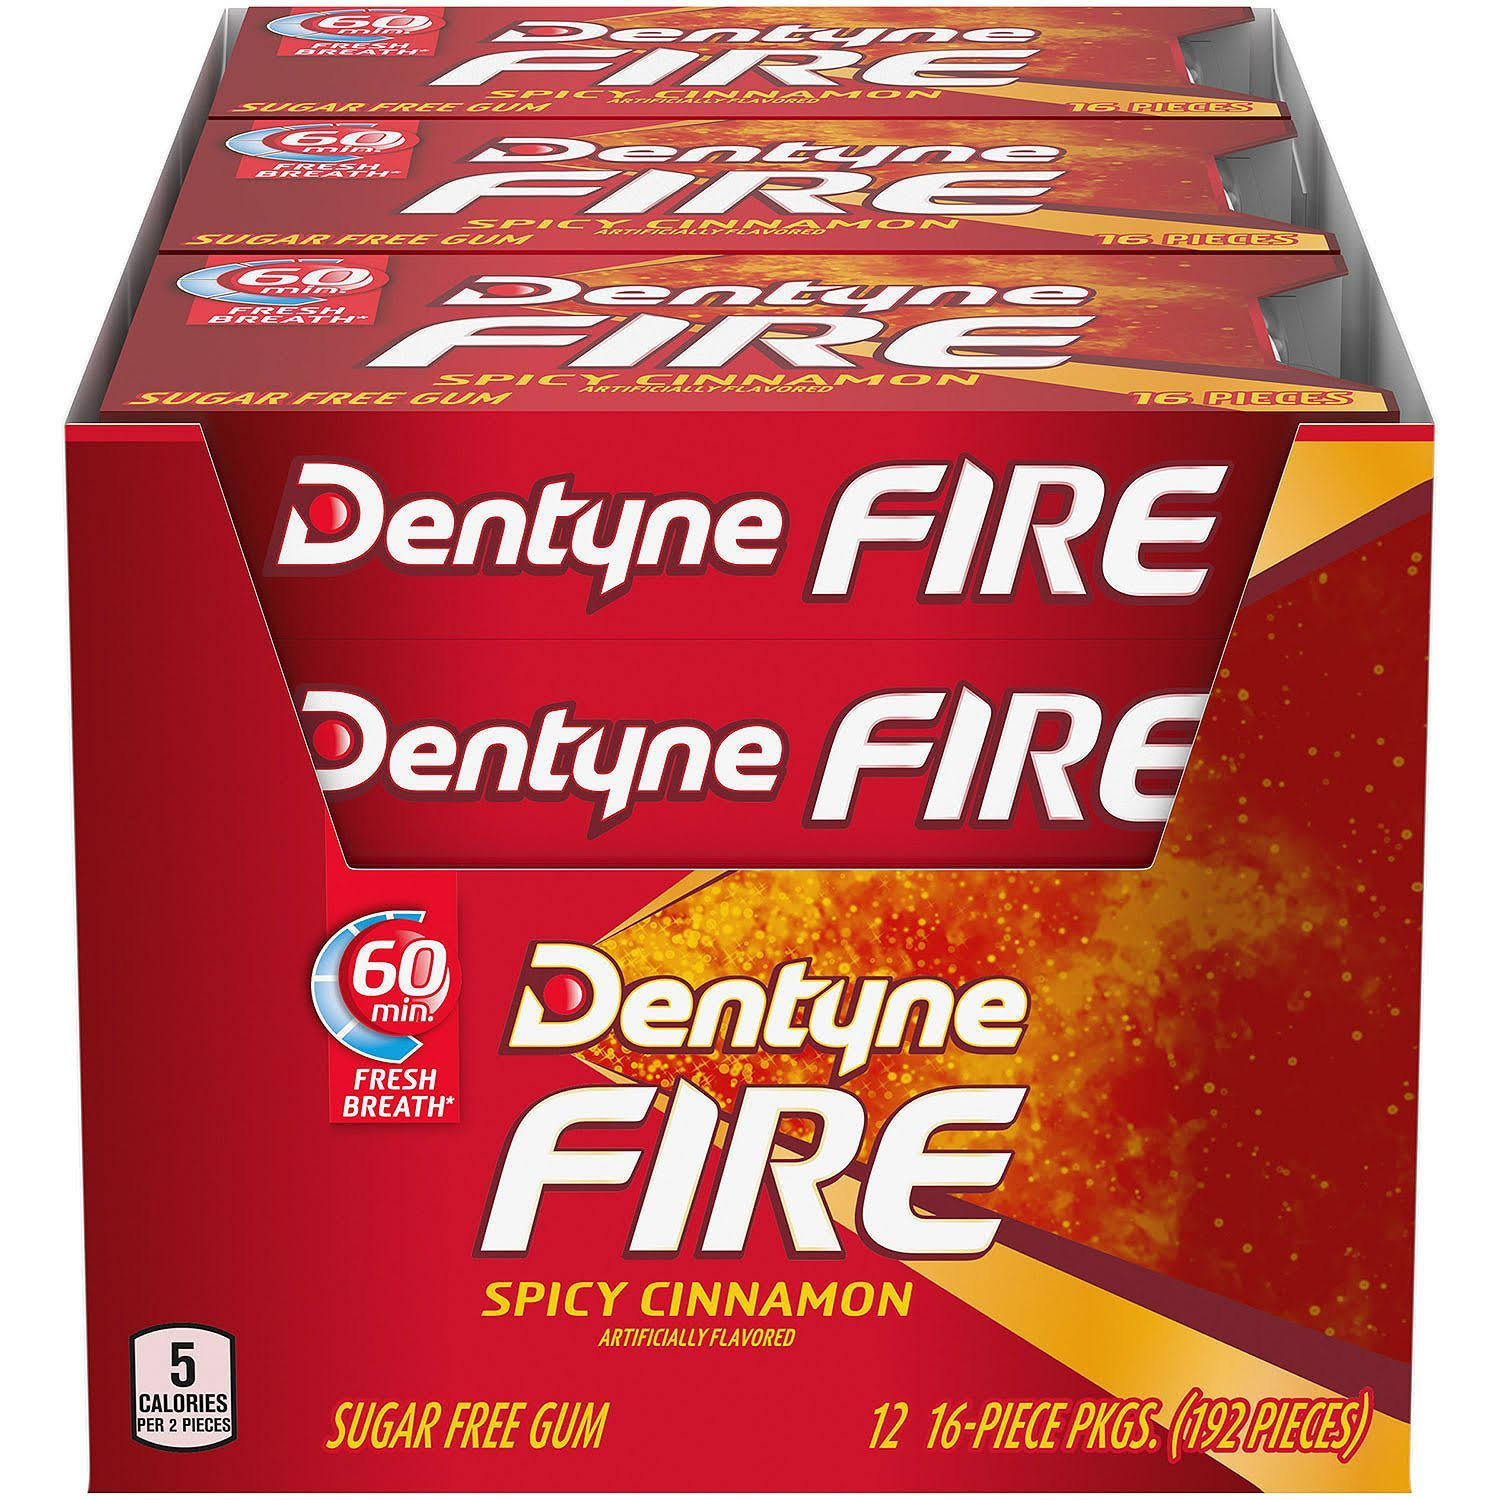 Dentyne Fire Gum - 16 Pack, Spicy Cinnamon